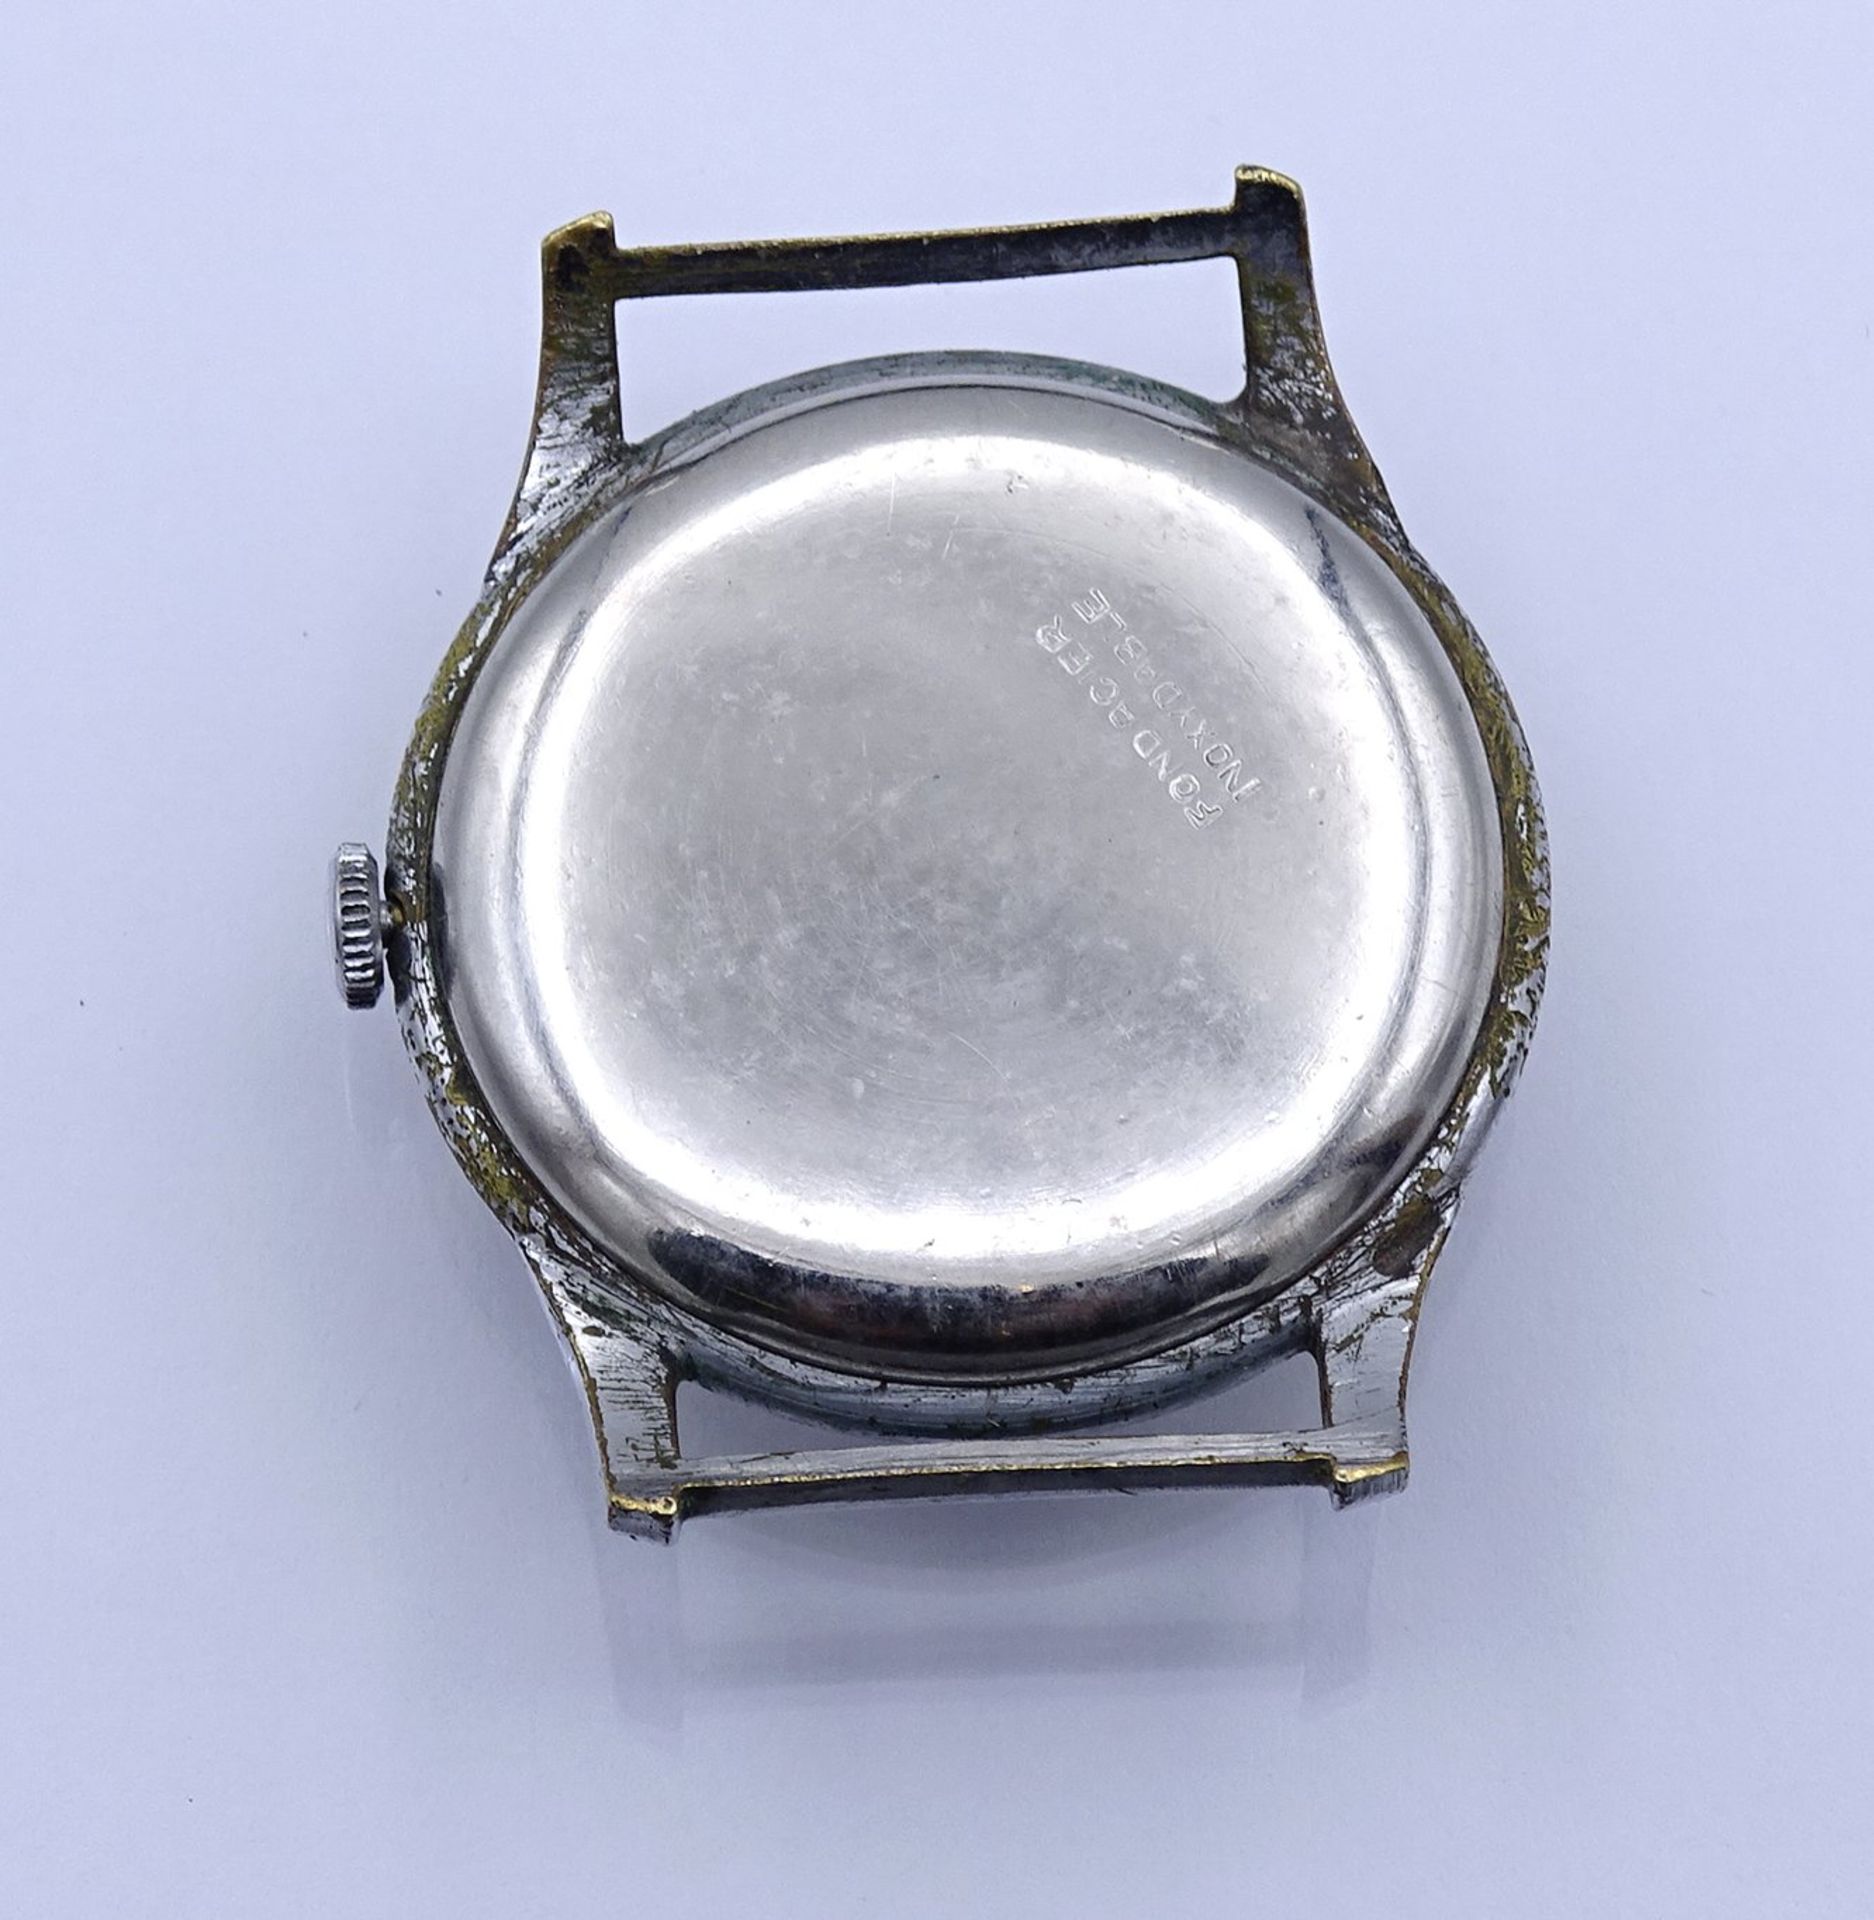 Armbanduhr "Imperial" , mechanisch, Werk läuft, D. 32,8mm, ohne Band, Alters- und Gebrauchsspuren - Image 2 of 2